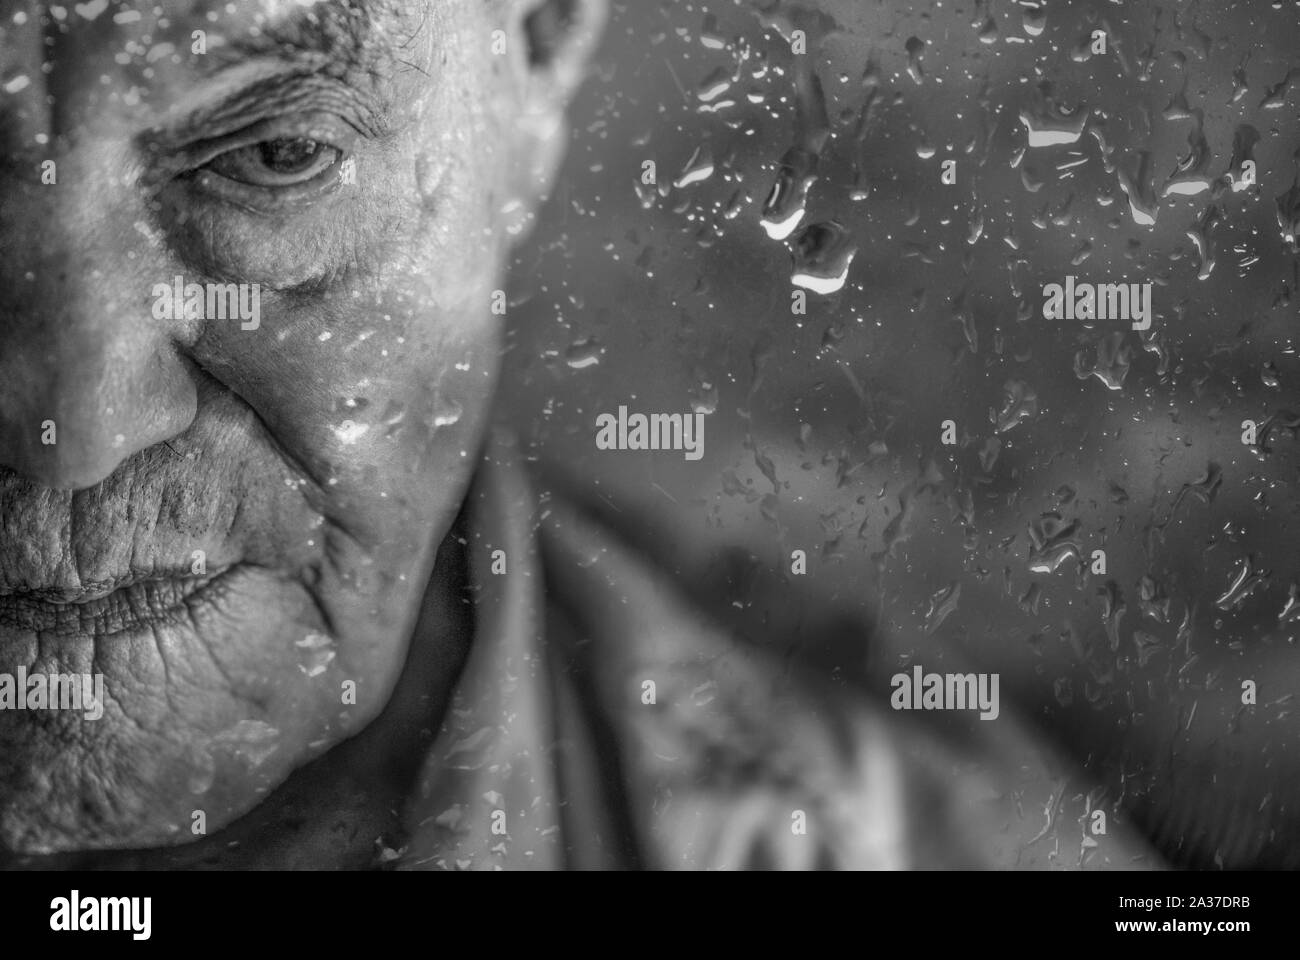 Paranaguá, Paraná, Brasilien - 18. November 2015: Brasilianische älterer Mann mit Blindheit hinter einem Fenster mit Regen fällt, nachdenklich Stockfoto